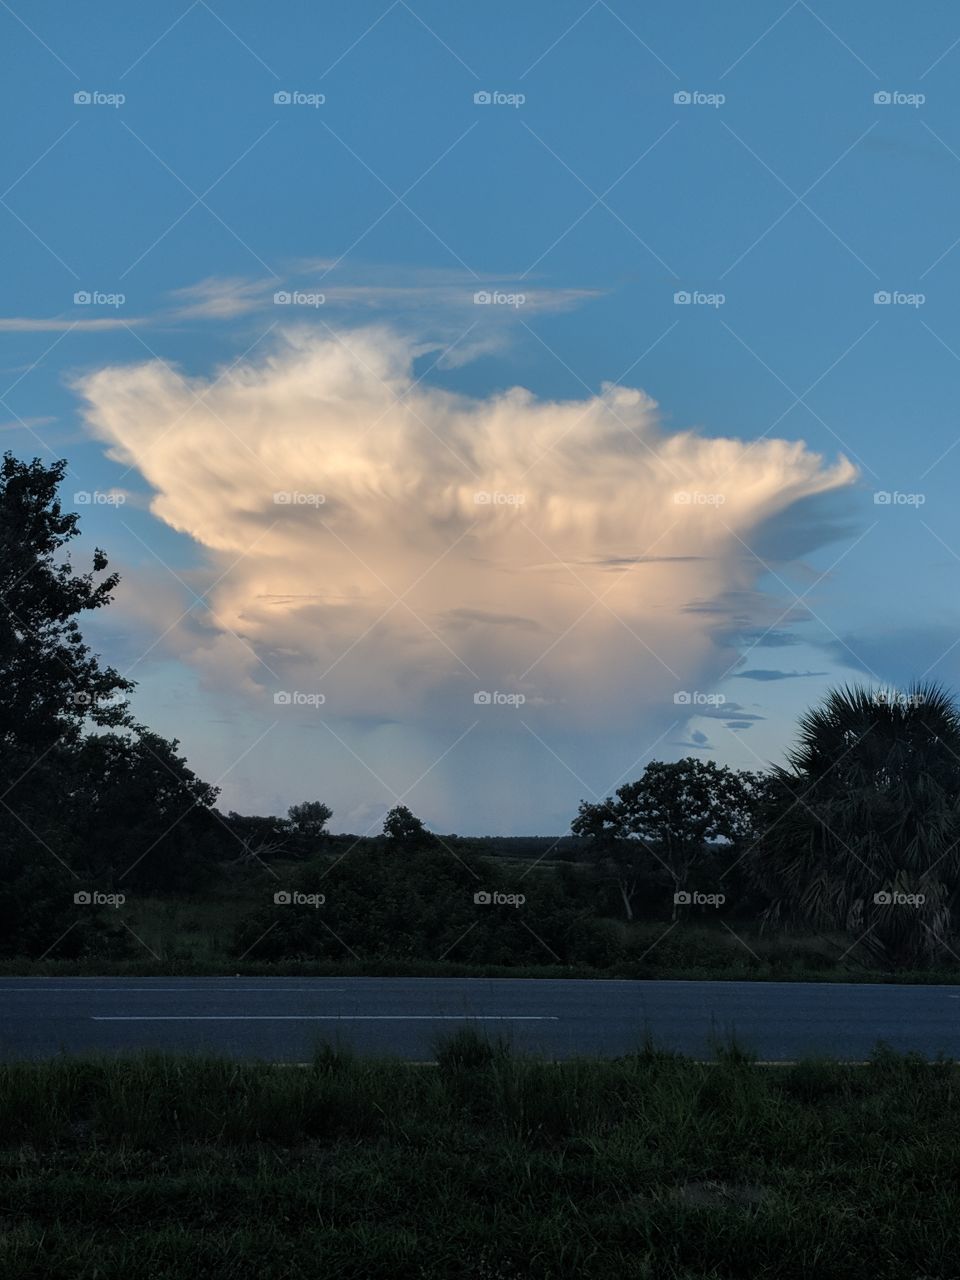 unique cloud formation